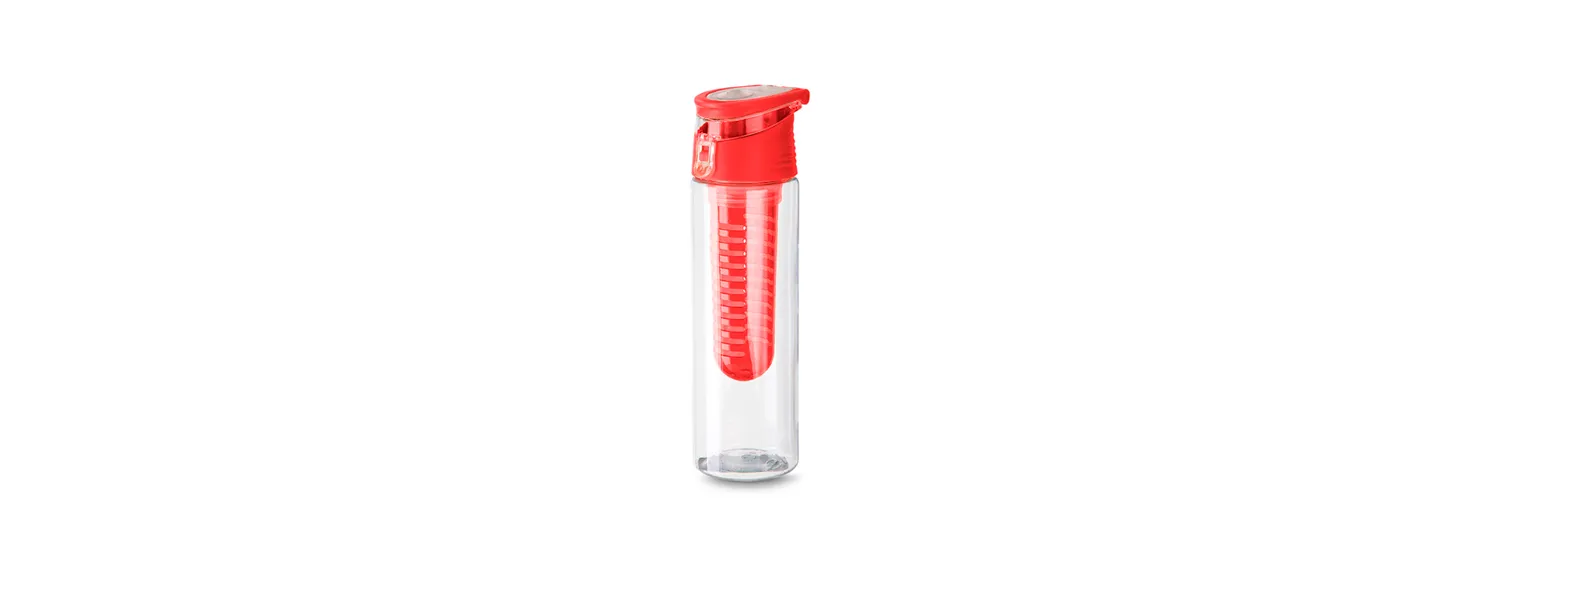 Squeeze em Plástico AS transparente/vermelho. Conta com infusor para aromatizar o líquido, tampa principal rosqueável, tampa abre e fecha e alça que facilita o transporte. Pode ser usado sem o infusor como um squeeze normal. Capacidade: 750ml